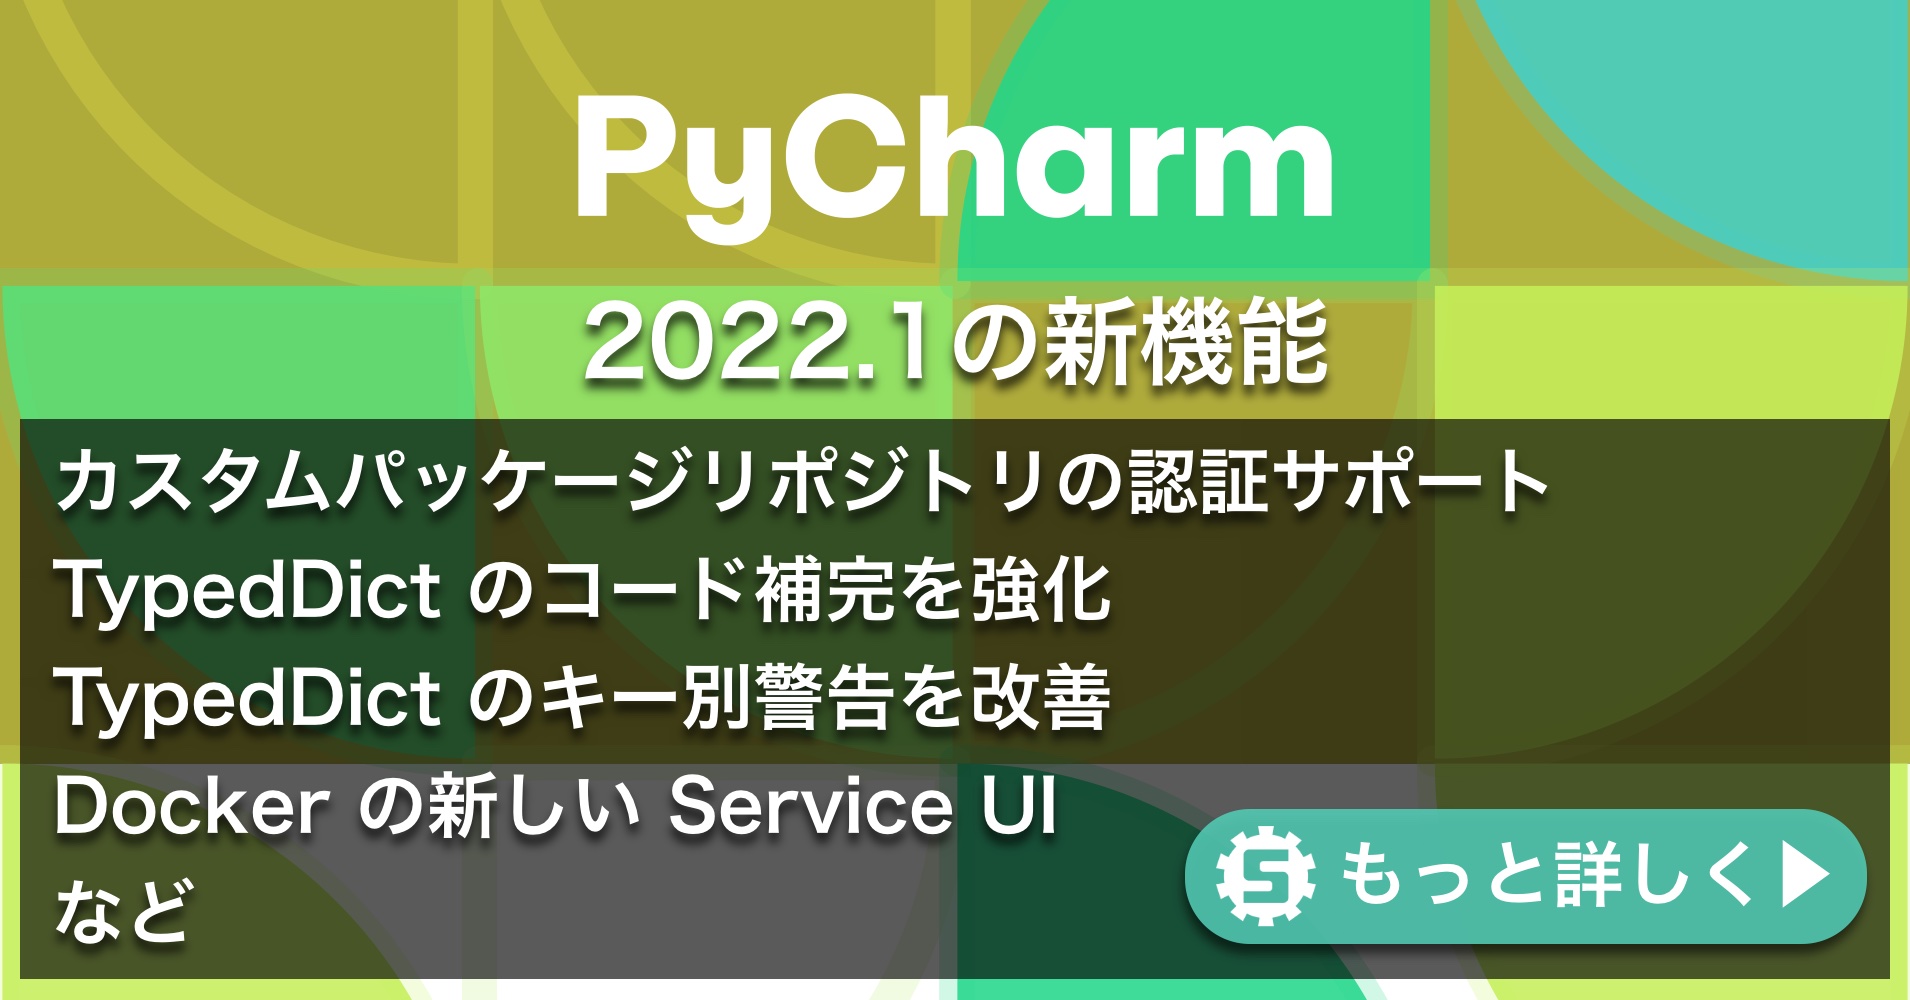 PyCharm 2022.1の新機能